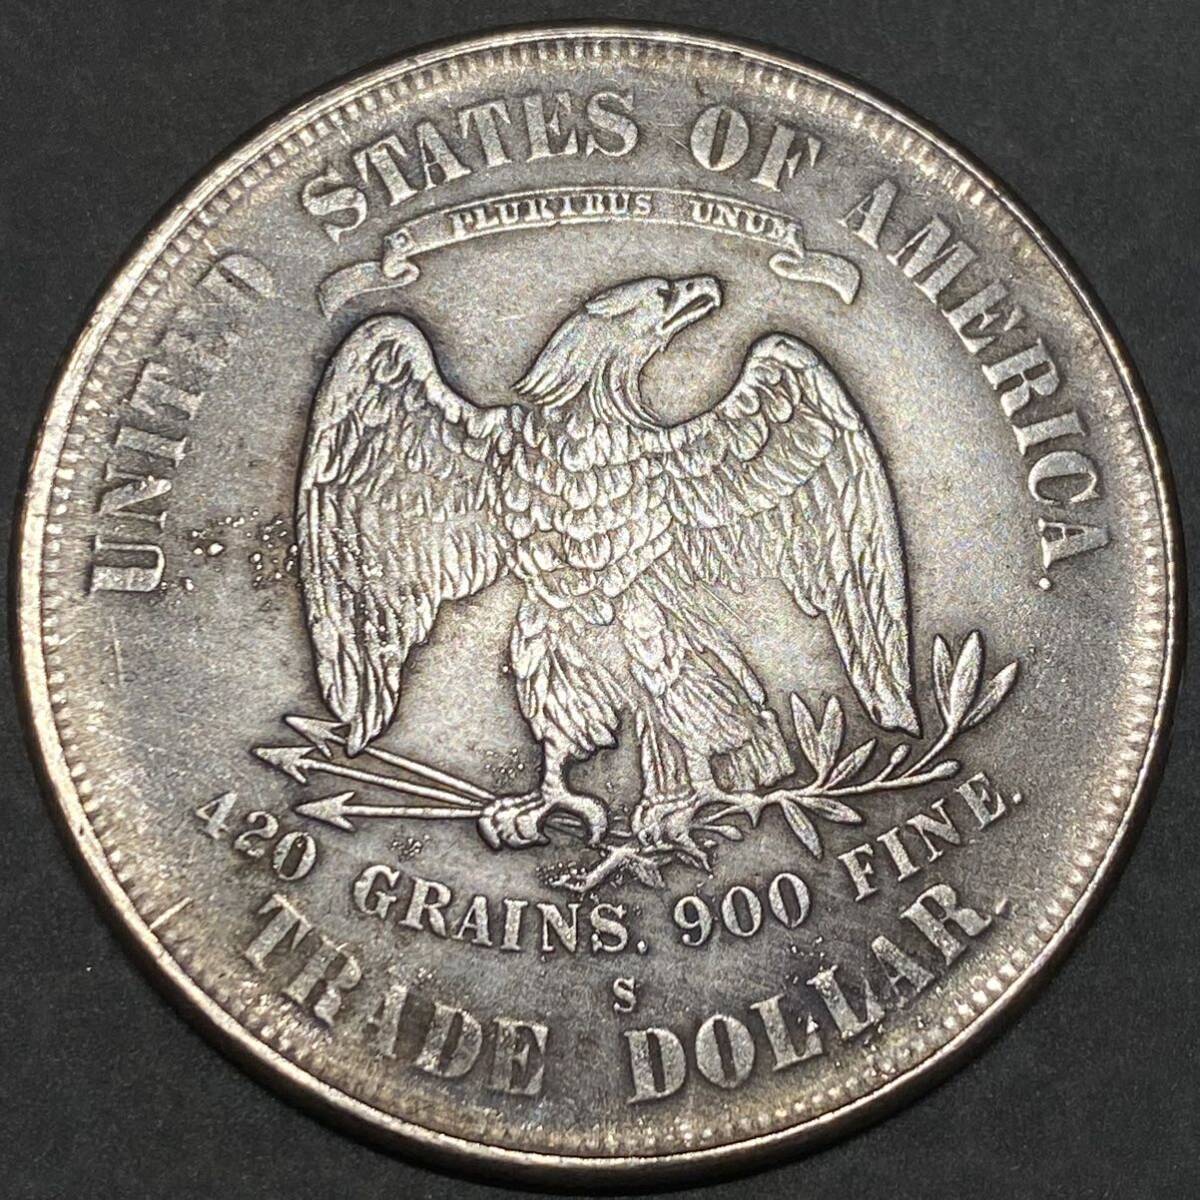 アメリカ古銭 貿易ドル 約21.88g 1879s 13つ星 リバティ 一円貨幣 硬貨骨董品コインコレクションの画像2